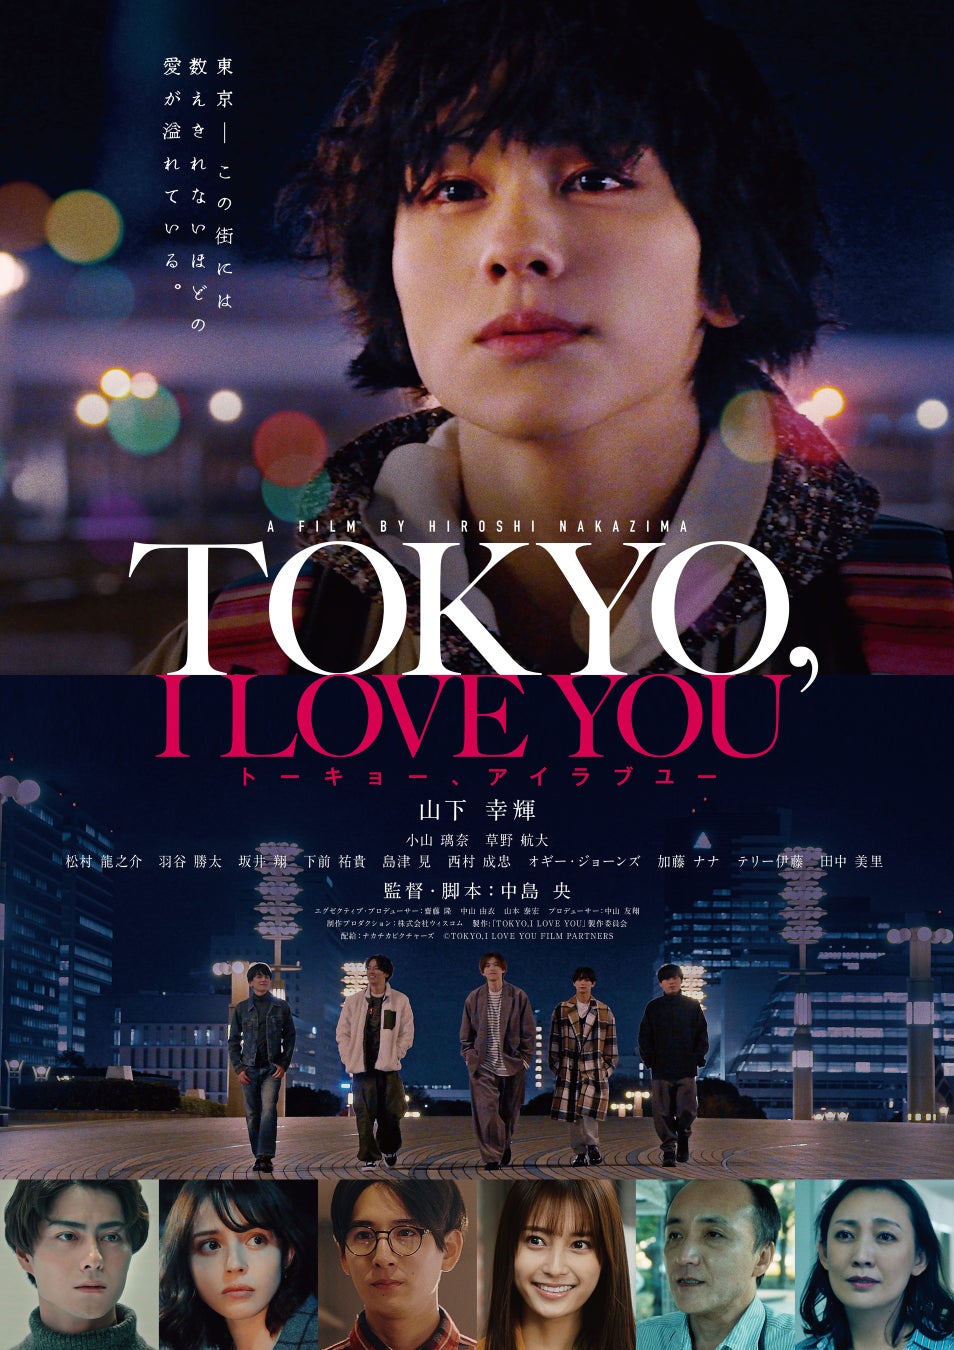 11月10日劇場公開に向けてポスタービジュアル解禁!山下幸輝 初主演映画「TOKYO,I LOVE YOU 」のサブ画像1